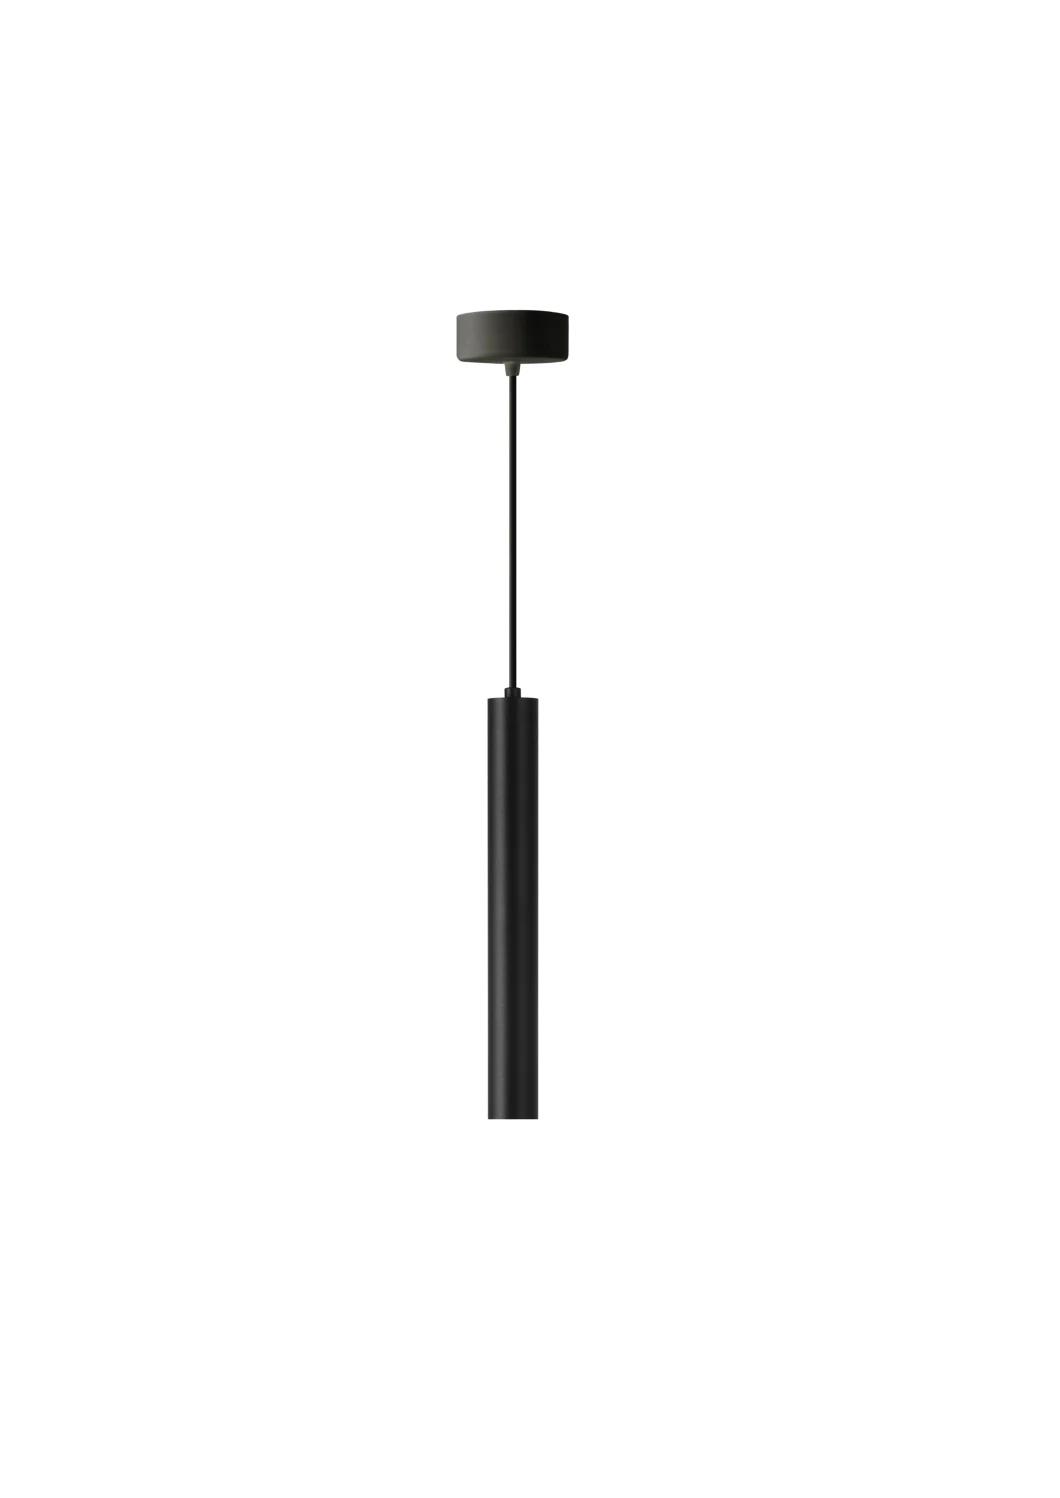 Modern Design LED Pendant Light for Cafe Counter Shopping Mall EMC RoHS